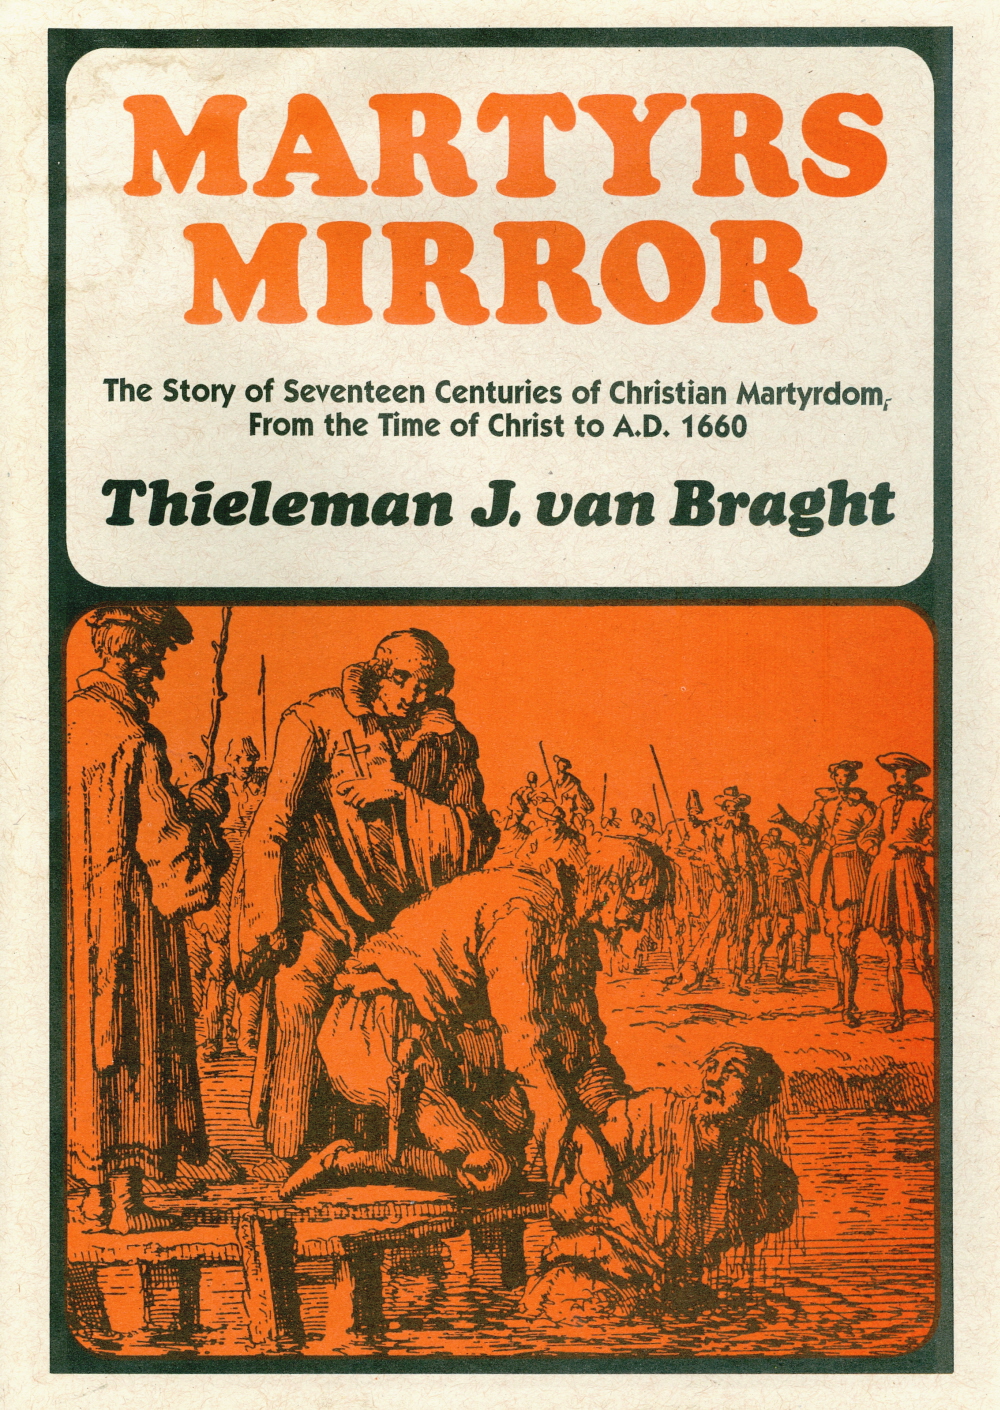 Martyrs Mirror